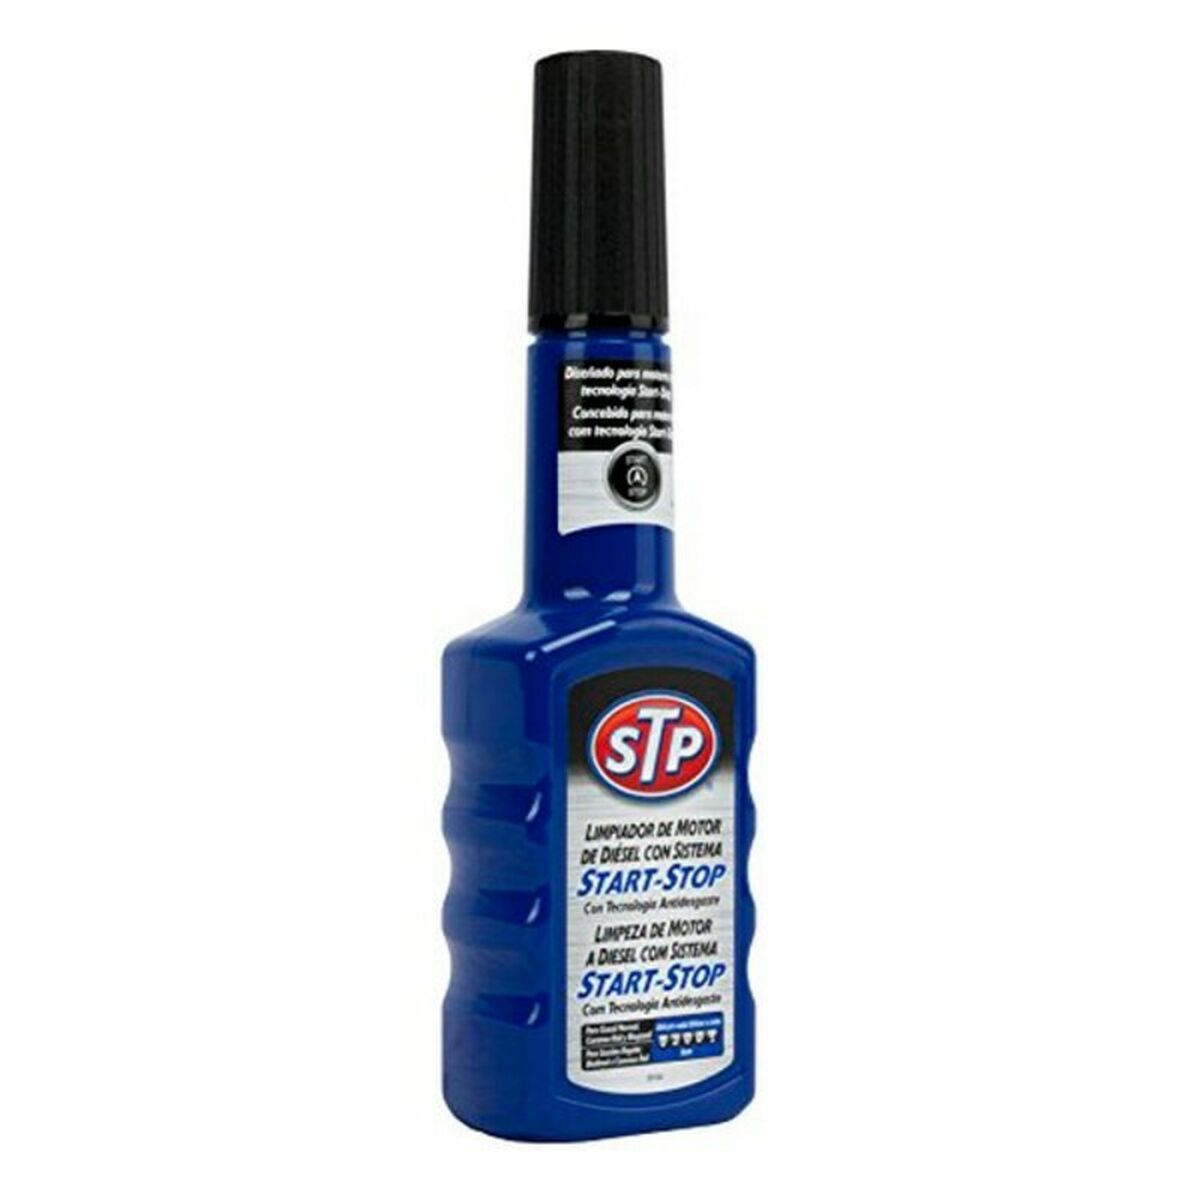 Aditivo STP tratamiento aceite motor diesel 300ml - Precio: 13,42